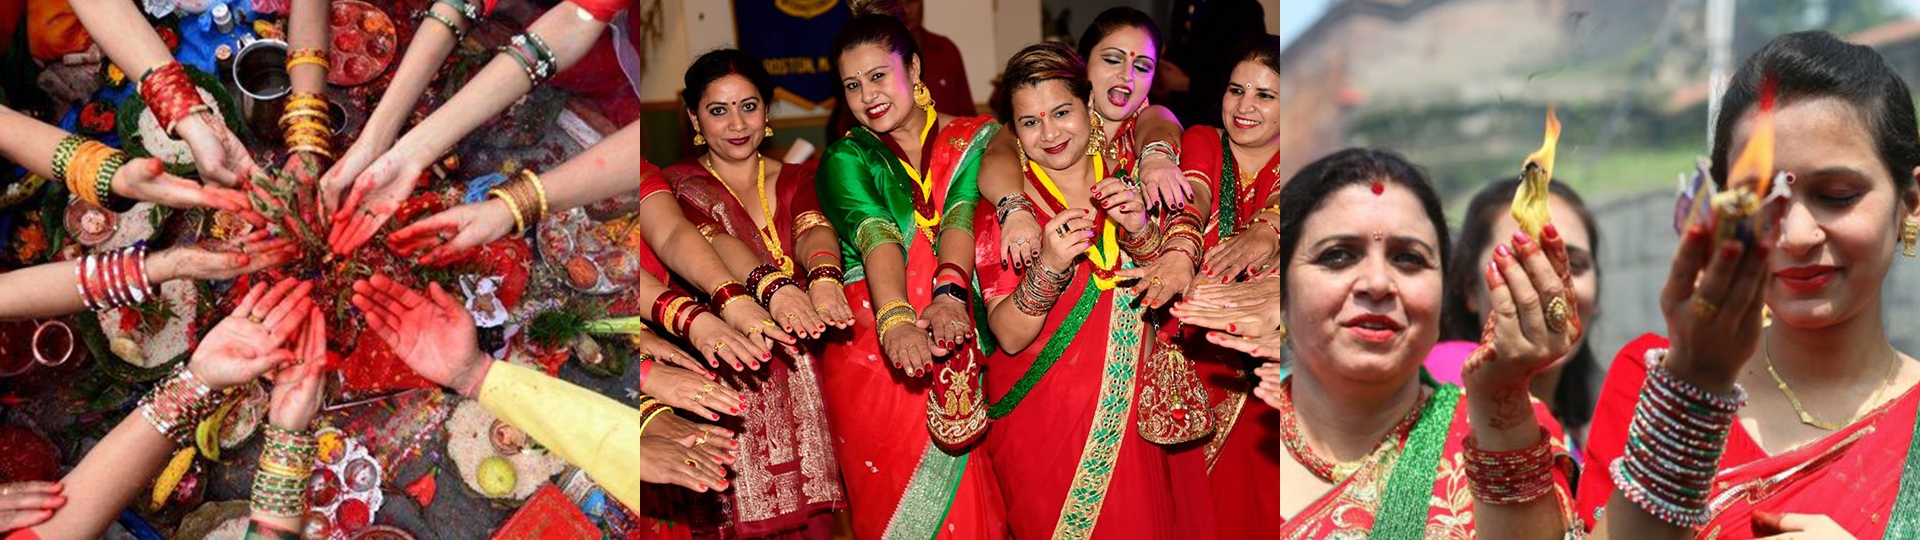 Teej Festival In Nepal The Popular Womens Festival In Nepal